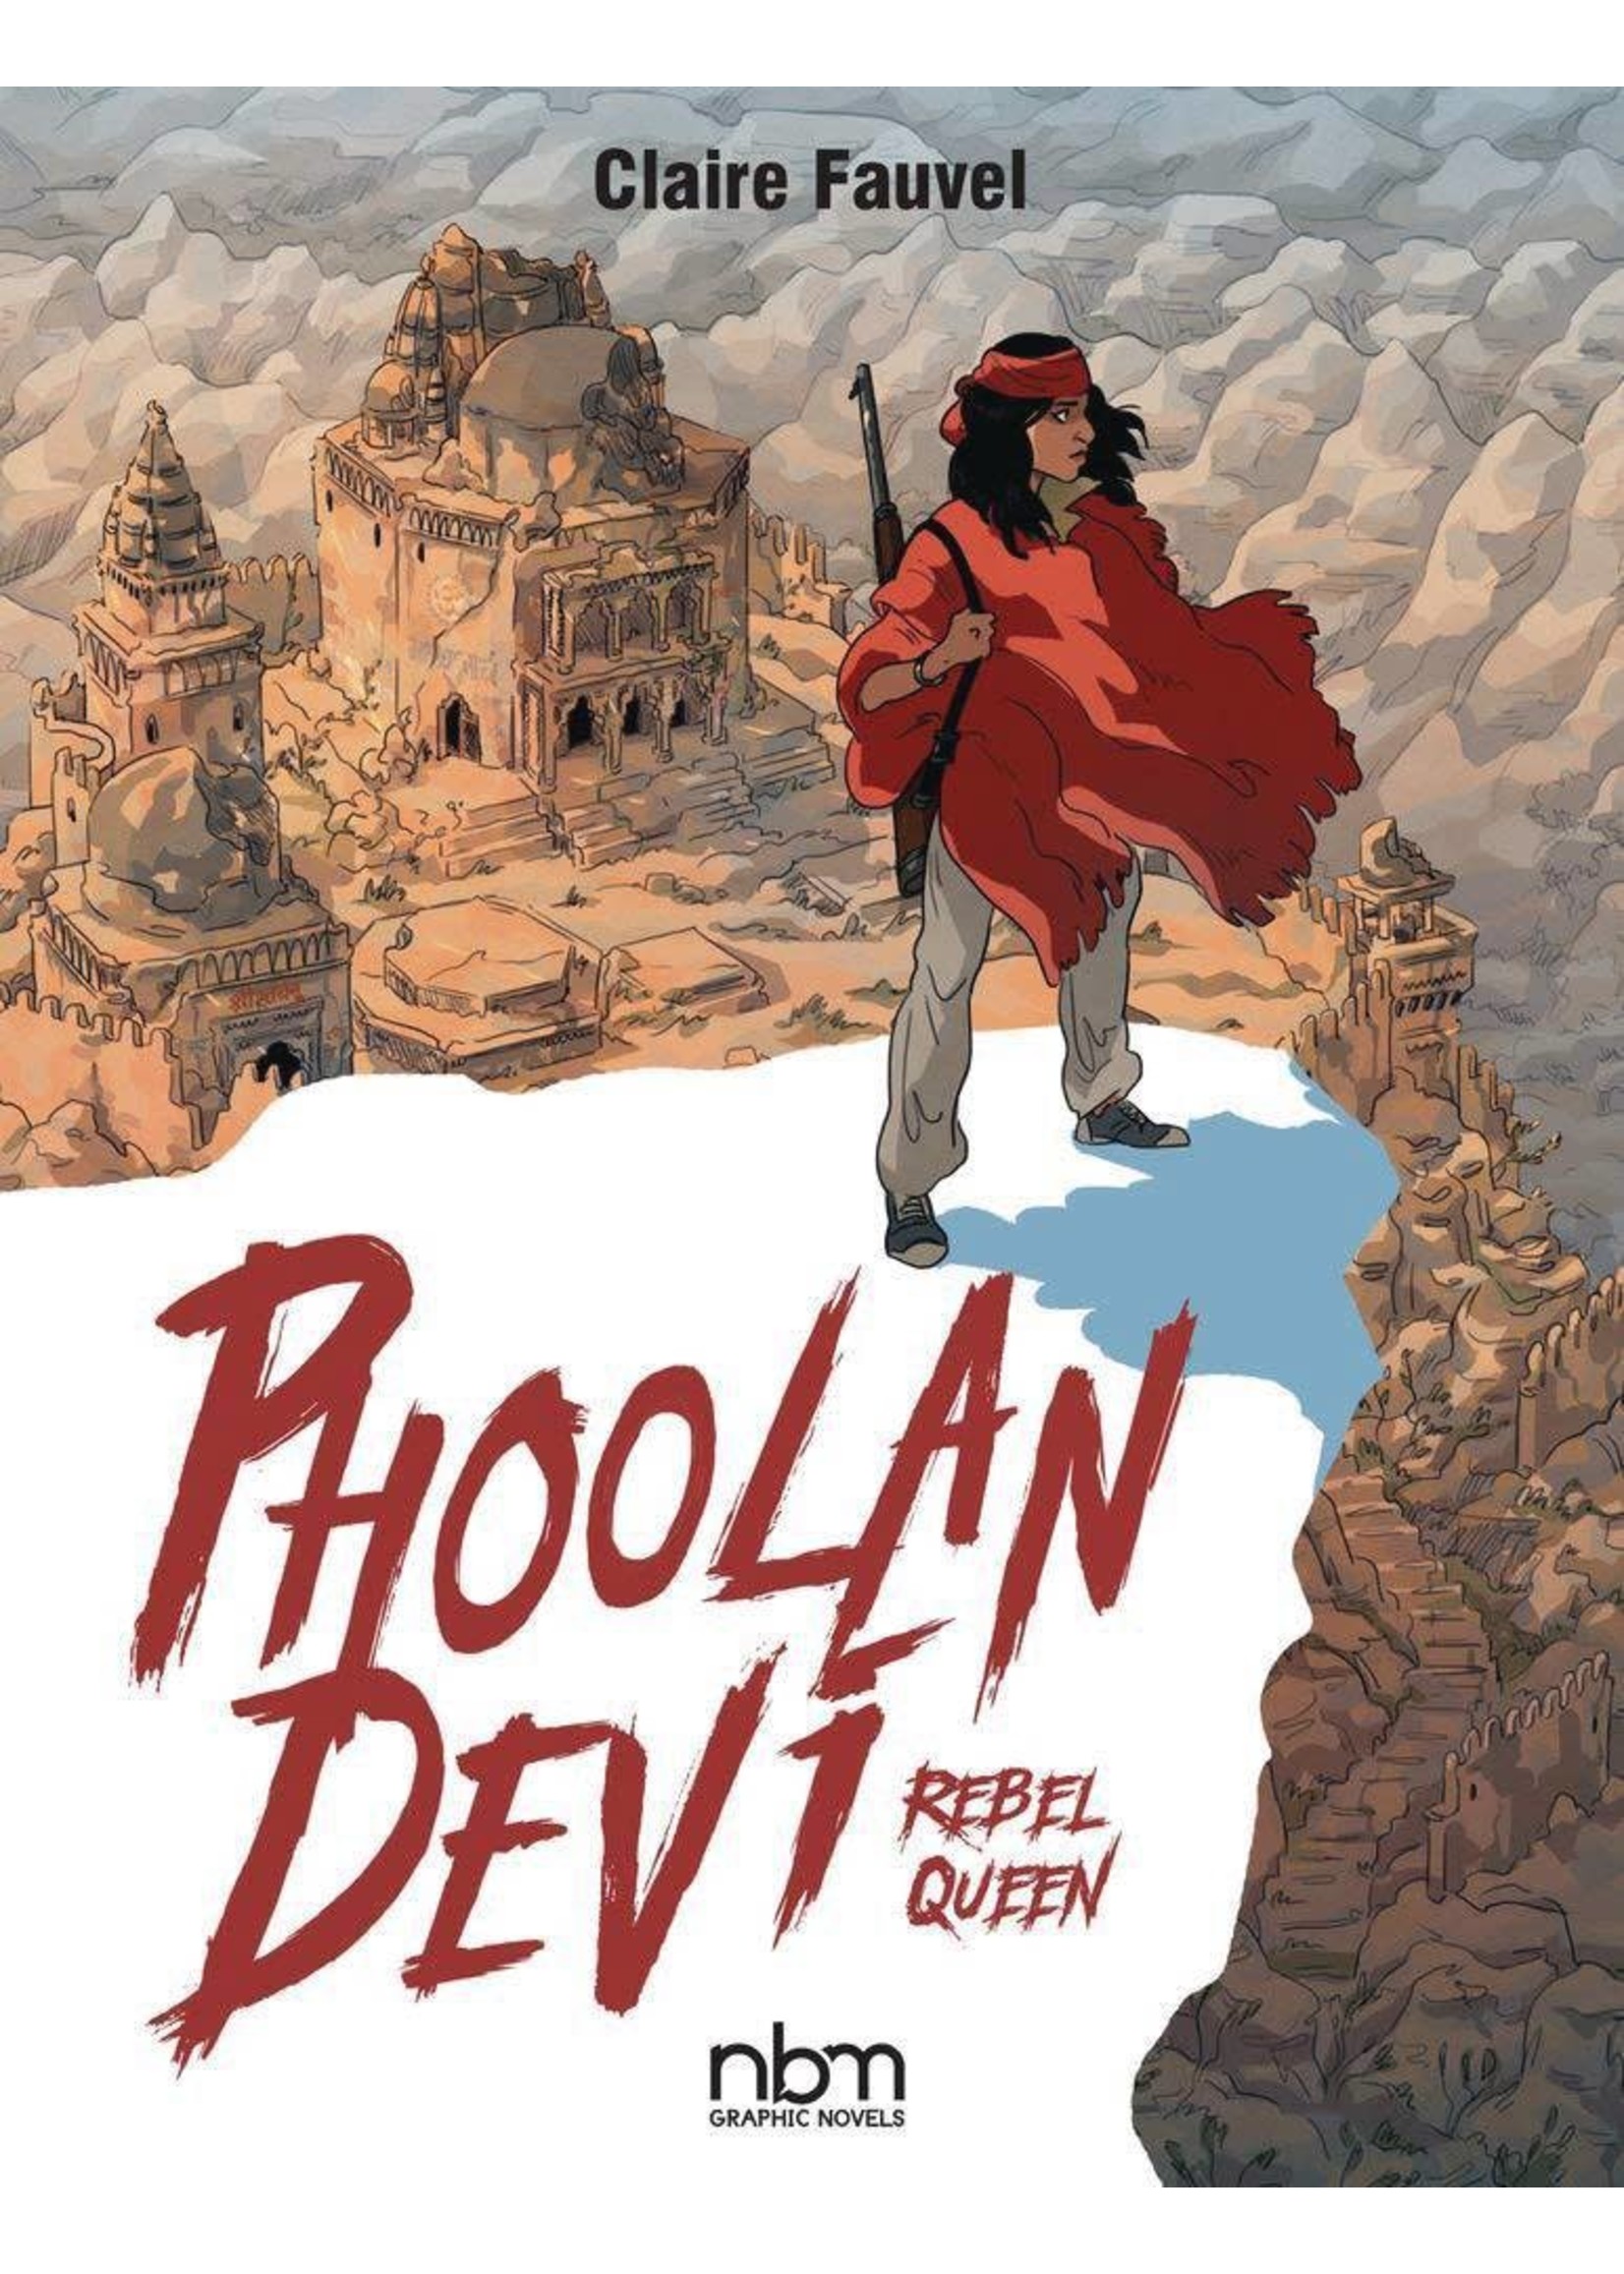 Phoolan Devi: Rebel Queen